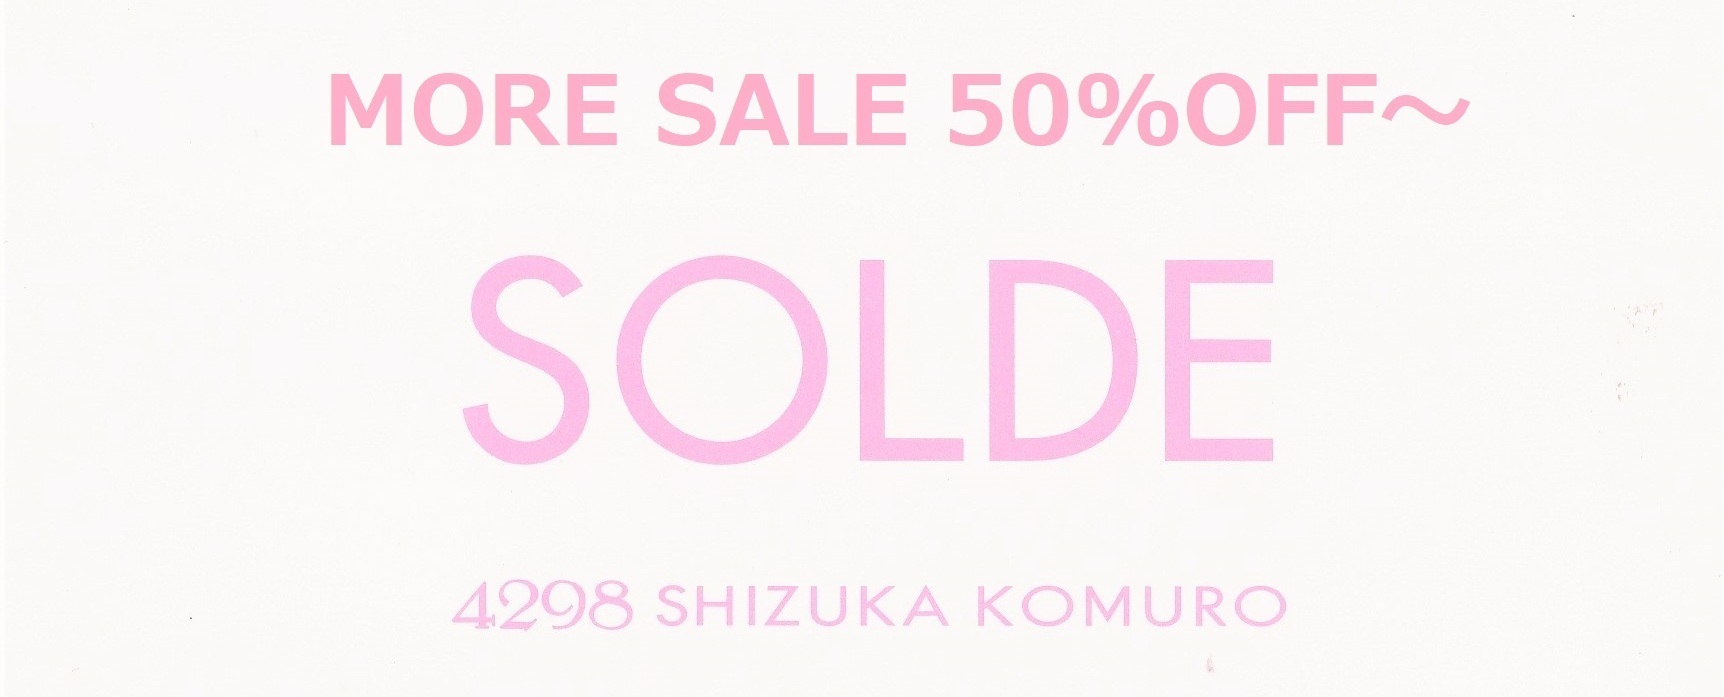 ファッション通販の4298 SHIZUKA KOMURO │ 4298シヅカコムロ